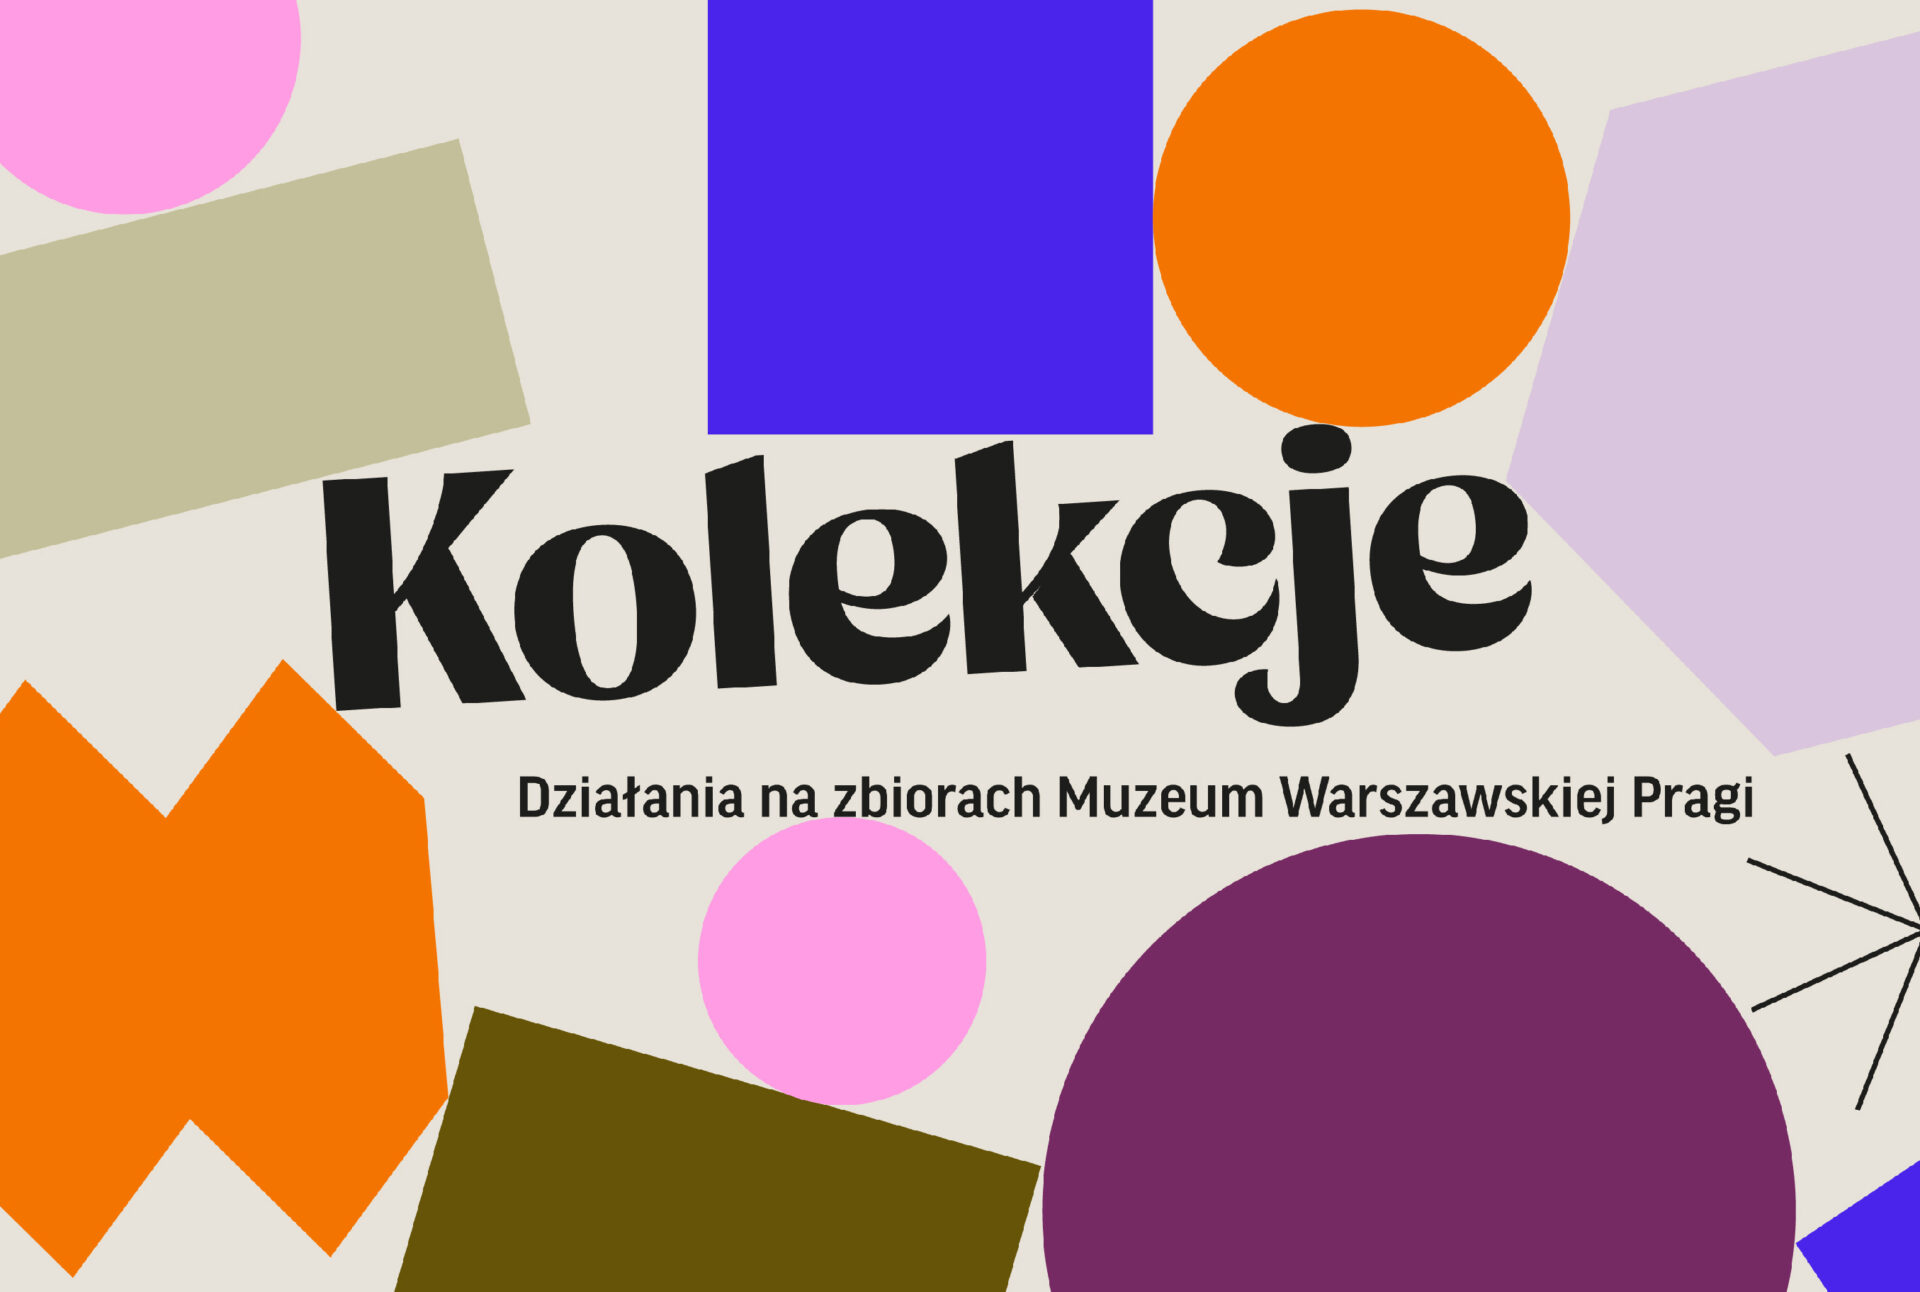 KOLEKCJE. Działania na zbiorach Muzeum Warszawskiej Pragi